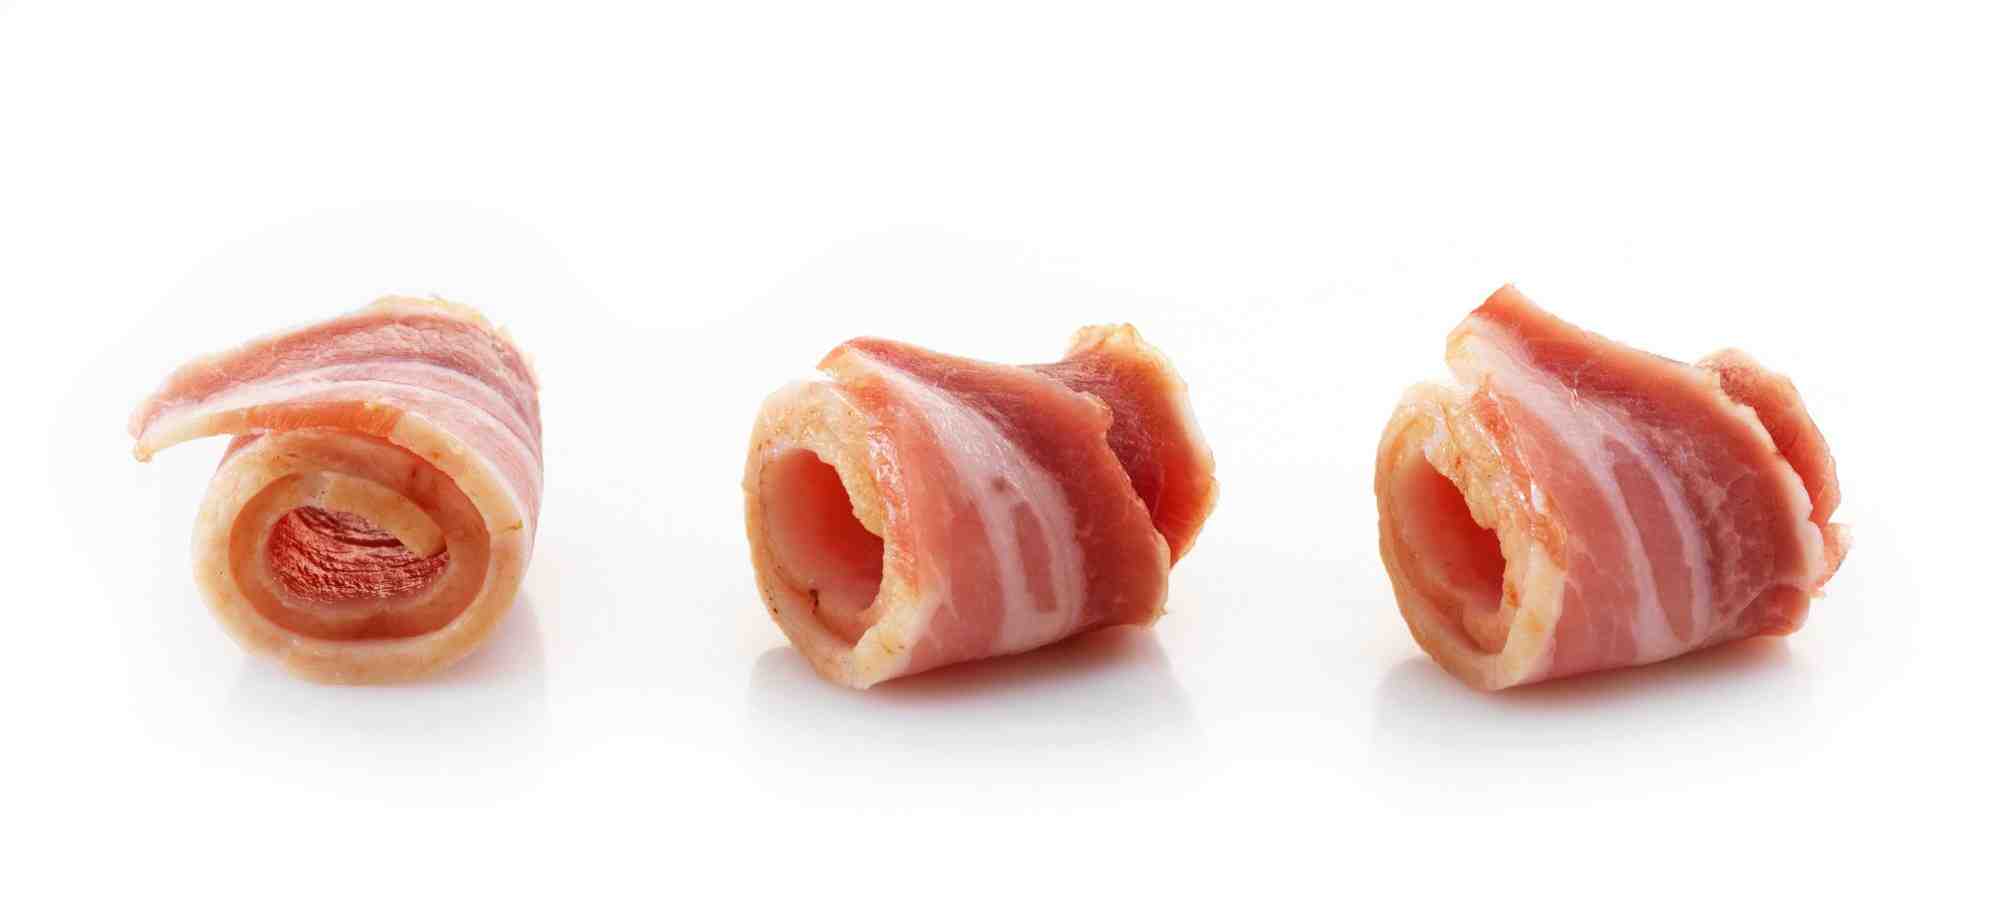 How long does bacon last in fridge?